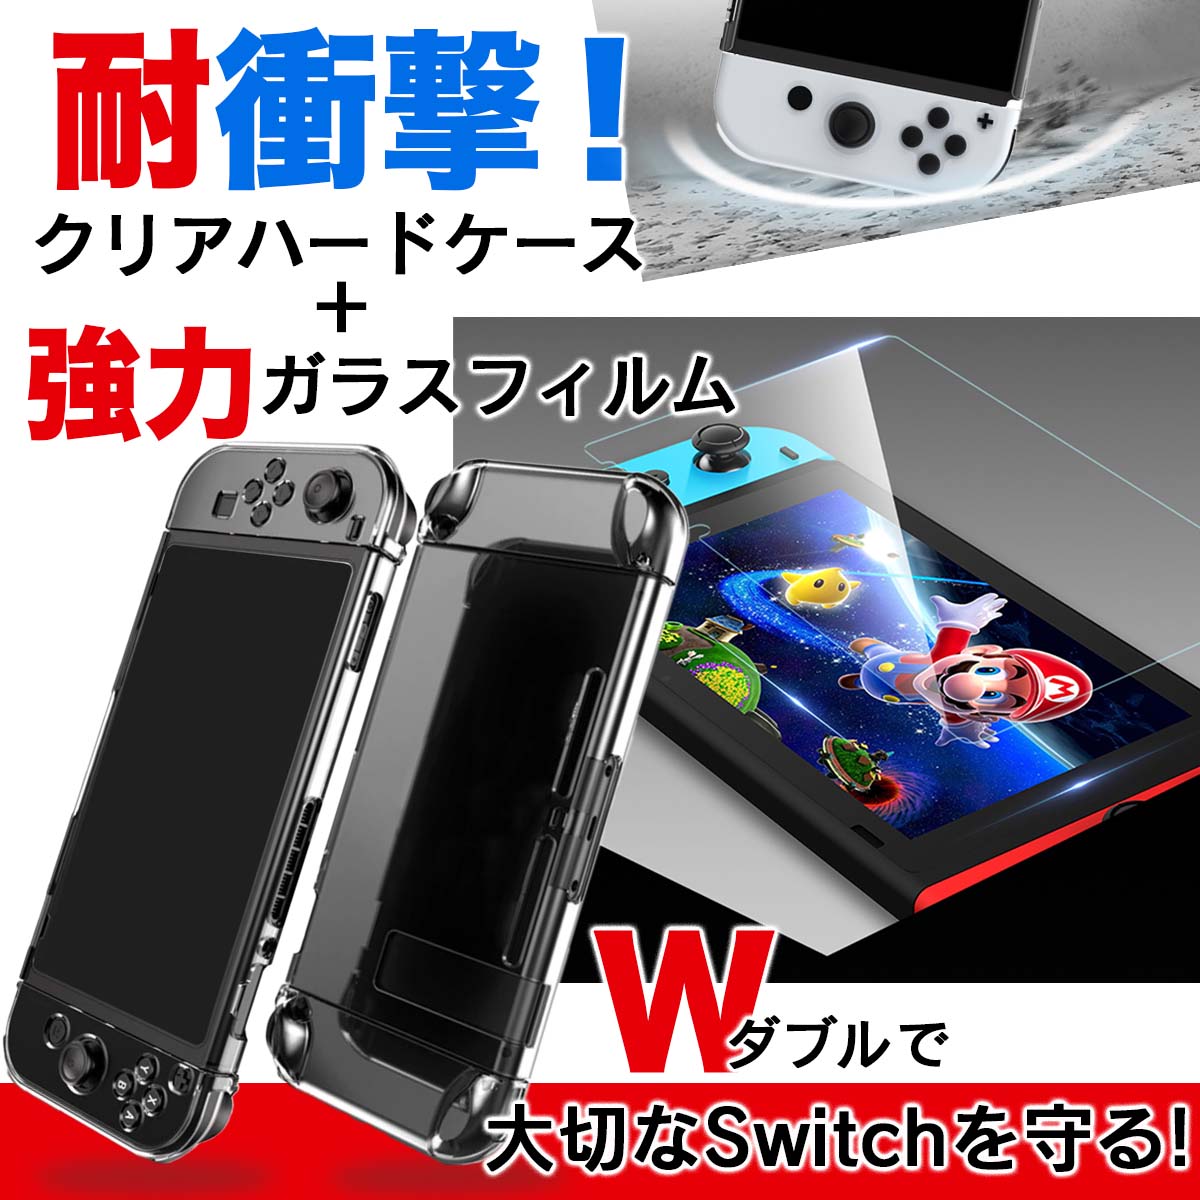 [新品未開封]Nintendo Switch グレー 強化ガラス保護フィルム付き